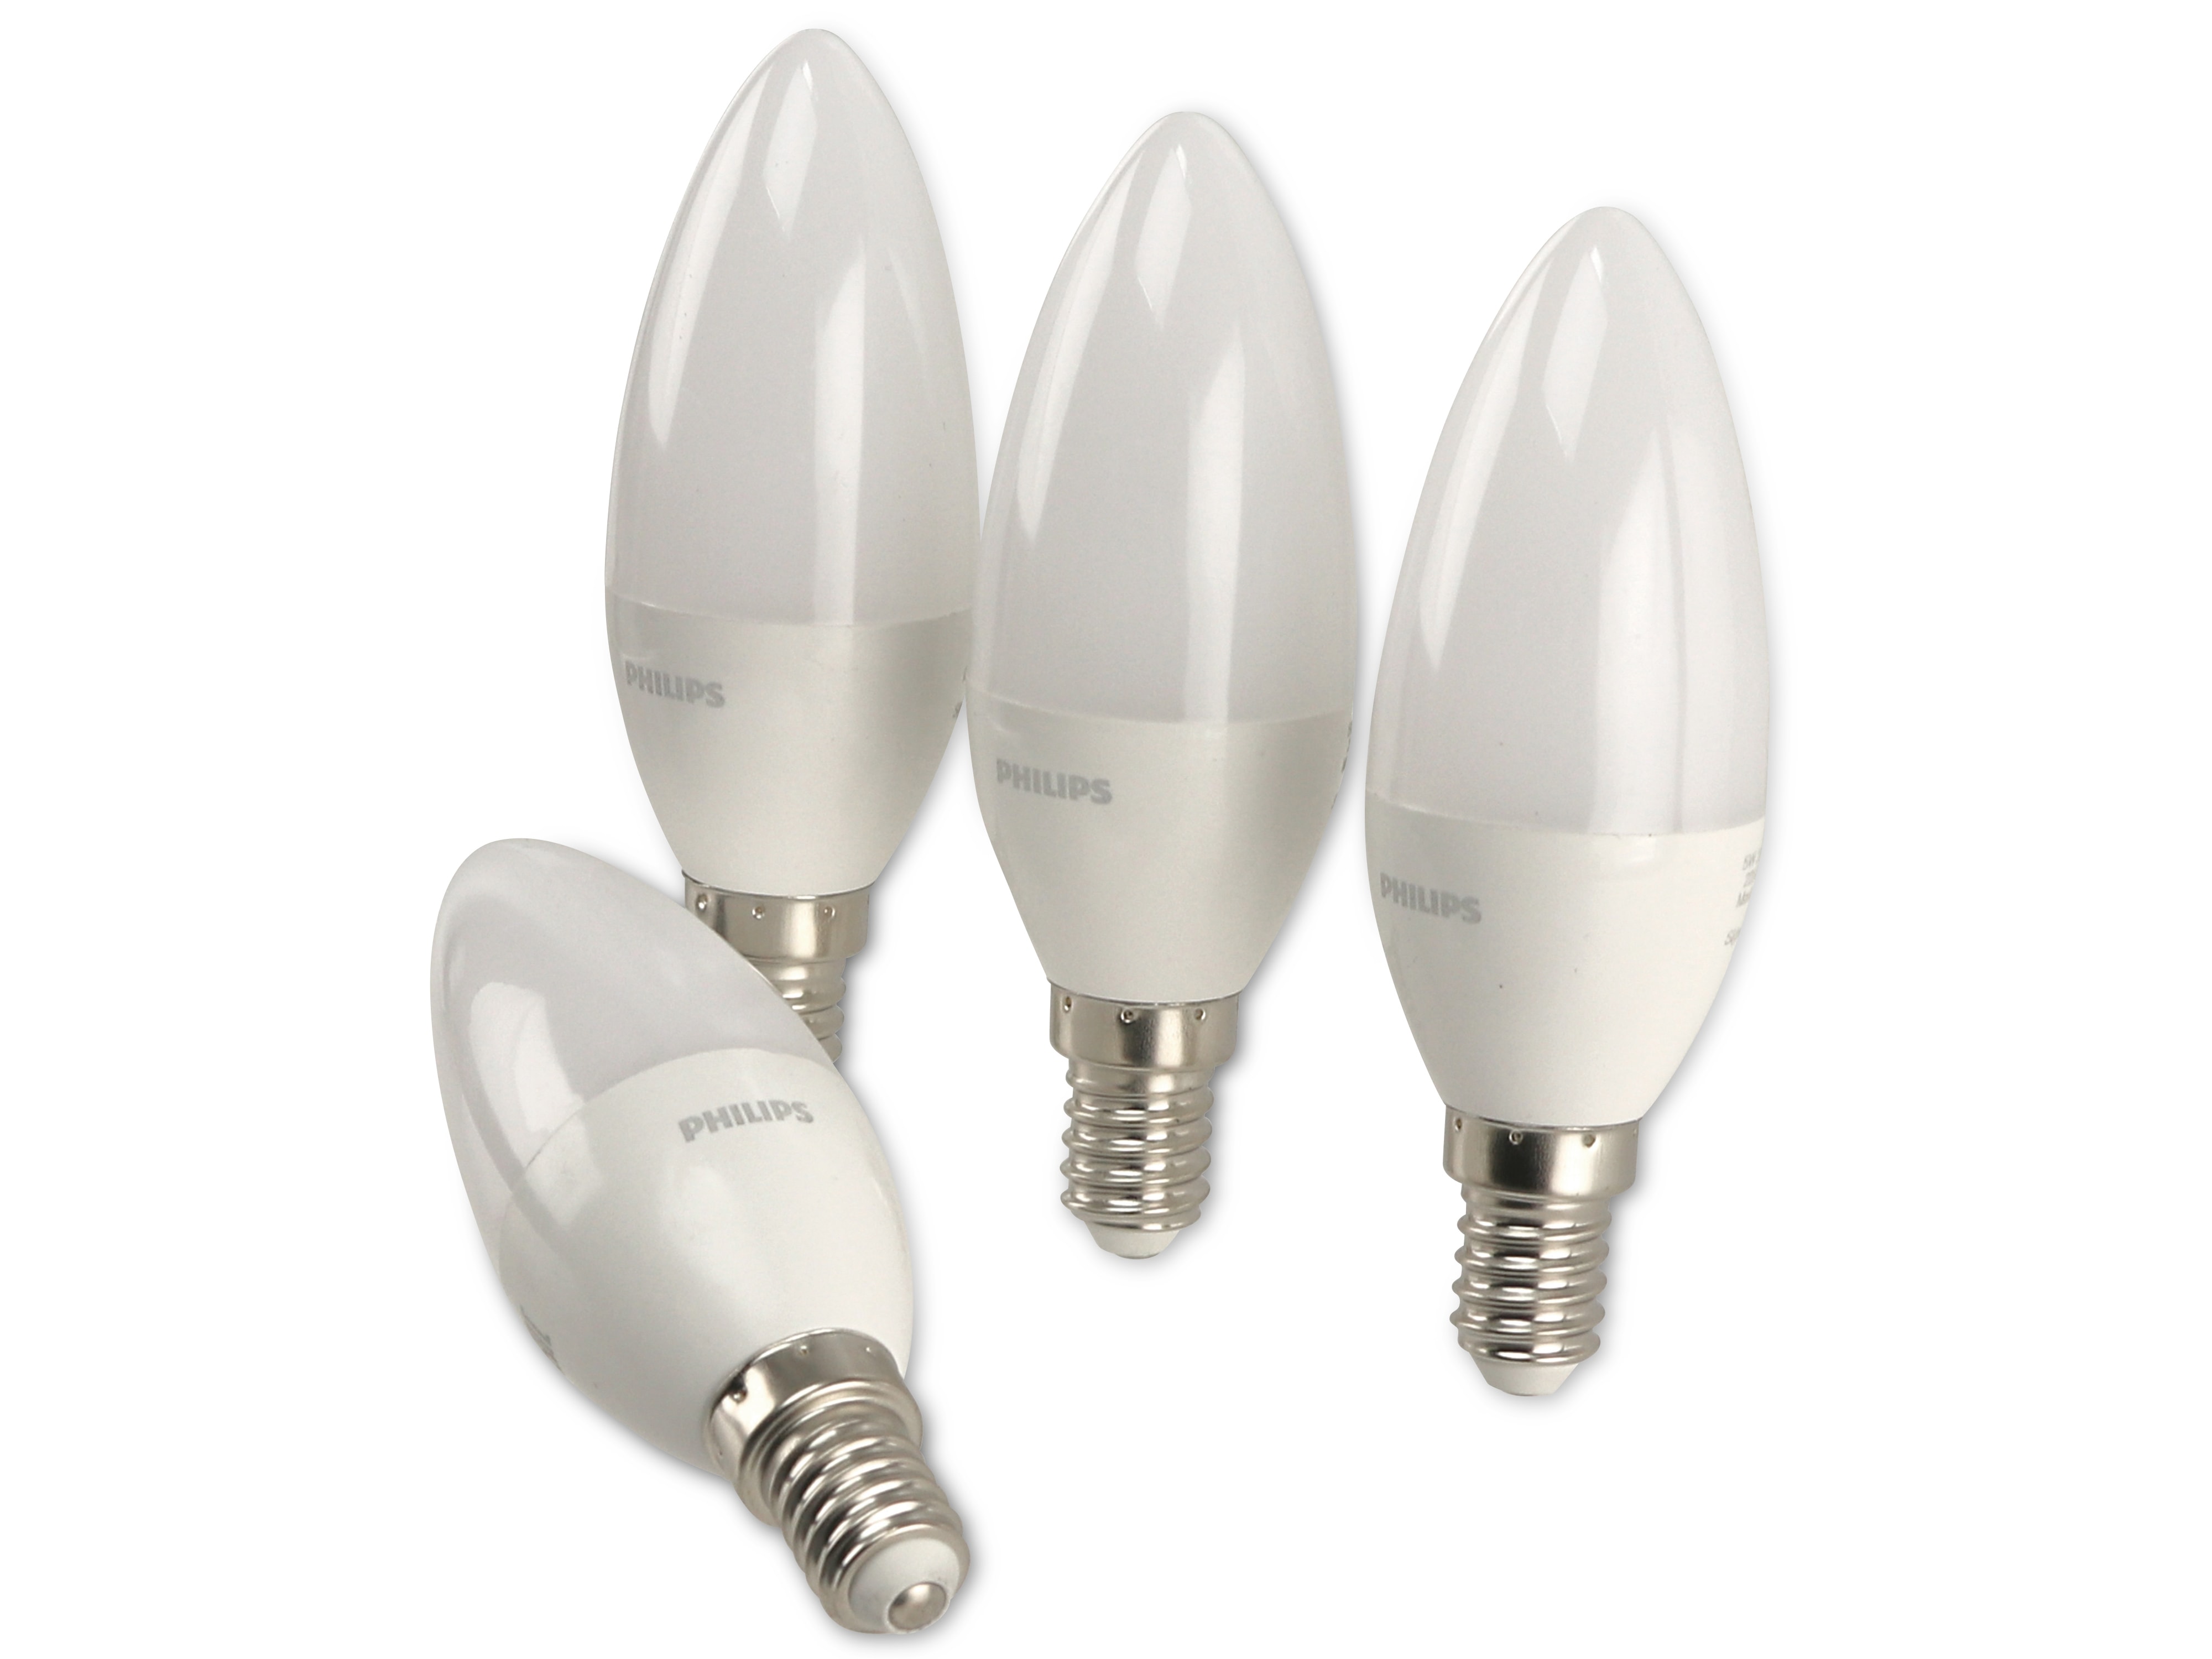 LED-Lampe Philips, Kerzenform, E14, EEK: F, 5 W, 470 lm, 4 Stück